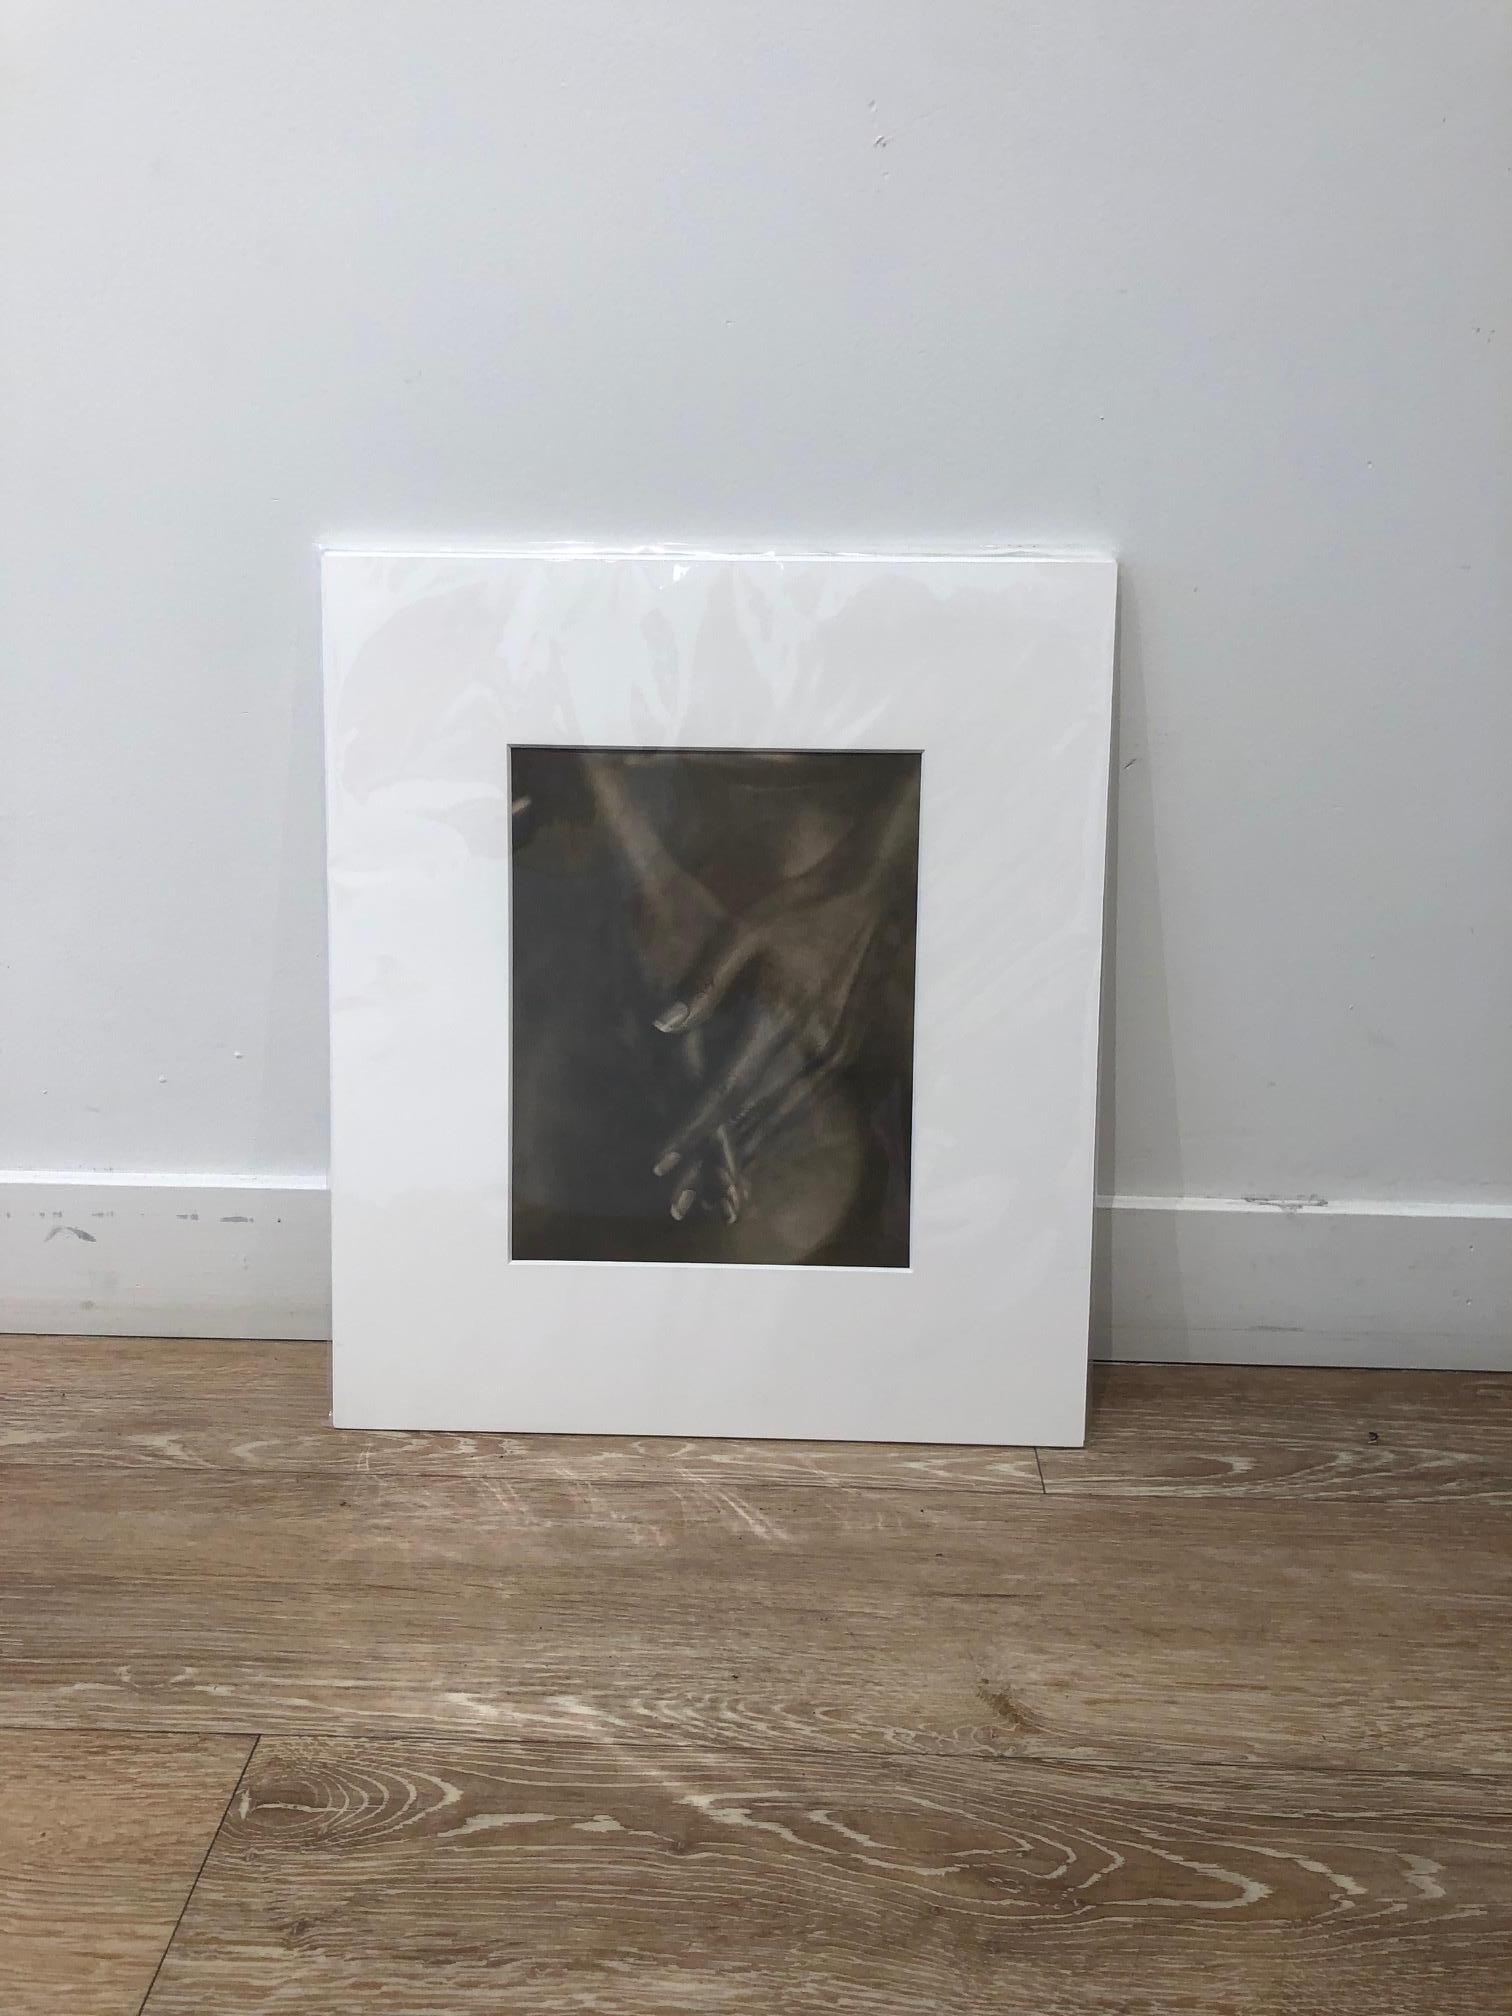 John Casado - Woman's Hands - Lithium-Silber-Gelatine-Fotodruck - 10 x 8 Zoll vertikal.  Professionell mattiert und in einem Archiv Präsentation Matte und Hülse zurück. äußeren Abmessungen sind: 14 3/4 x 10 3/4 Zoll. Einzigartiger Druck. Einer